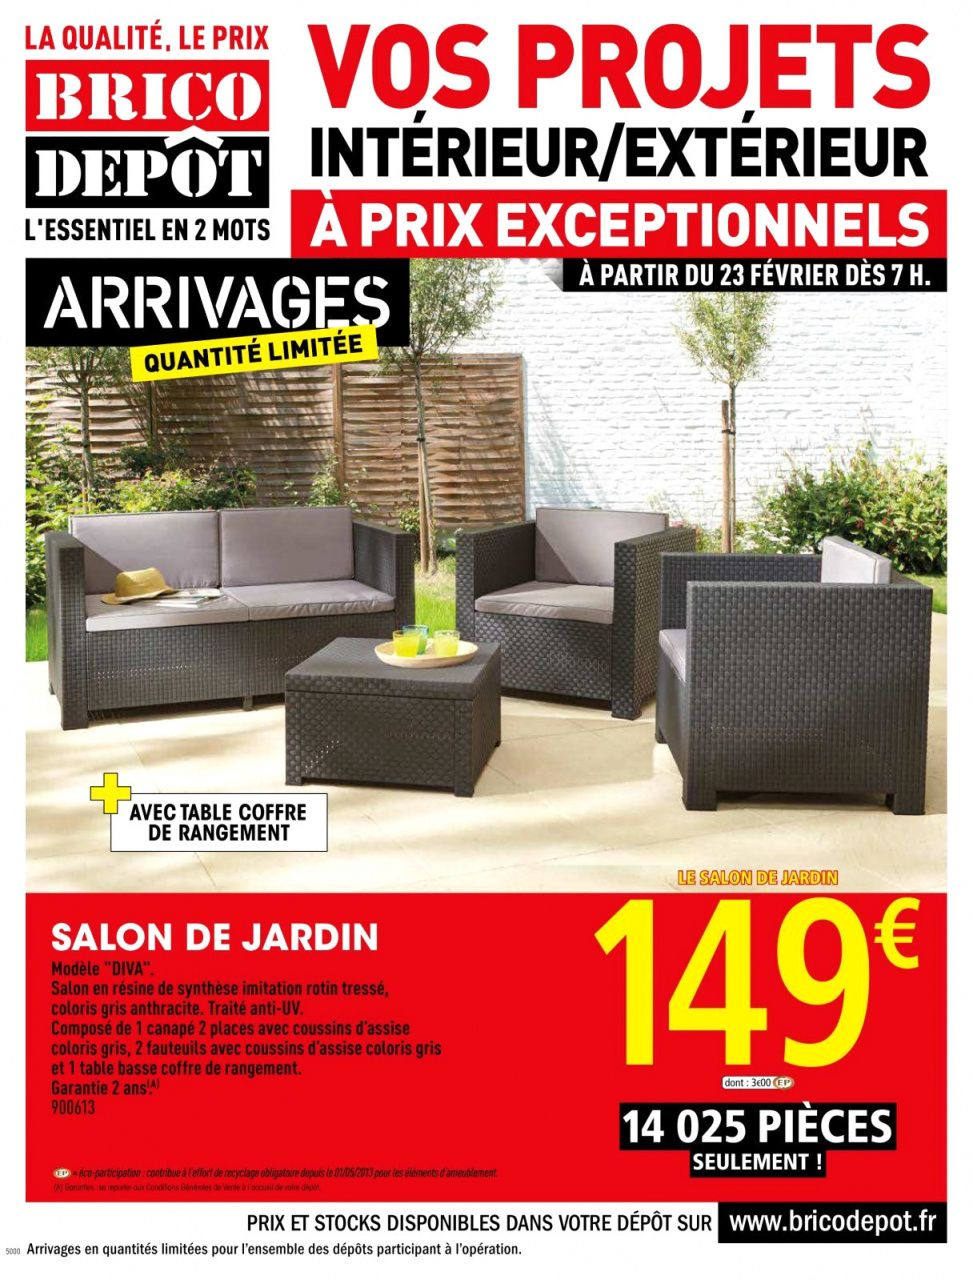 70 Salon De Jardin Allibert Brico Depot | Outdoor Furniture ... concernant Salon De Jardin Brico